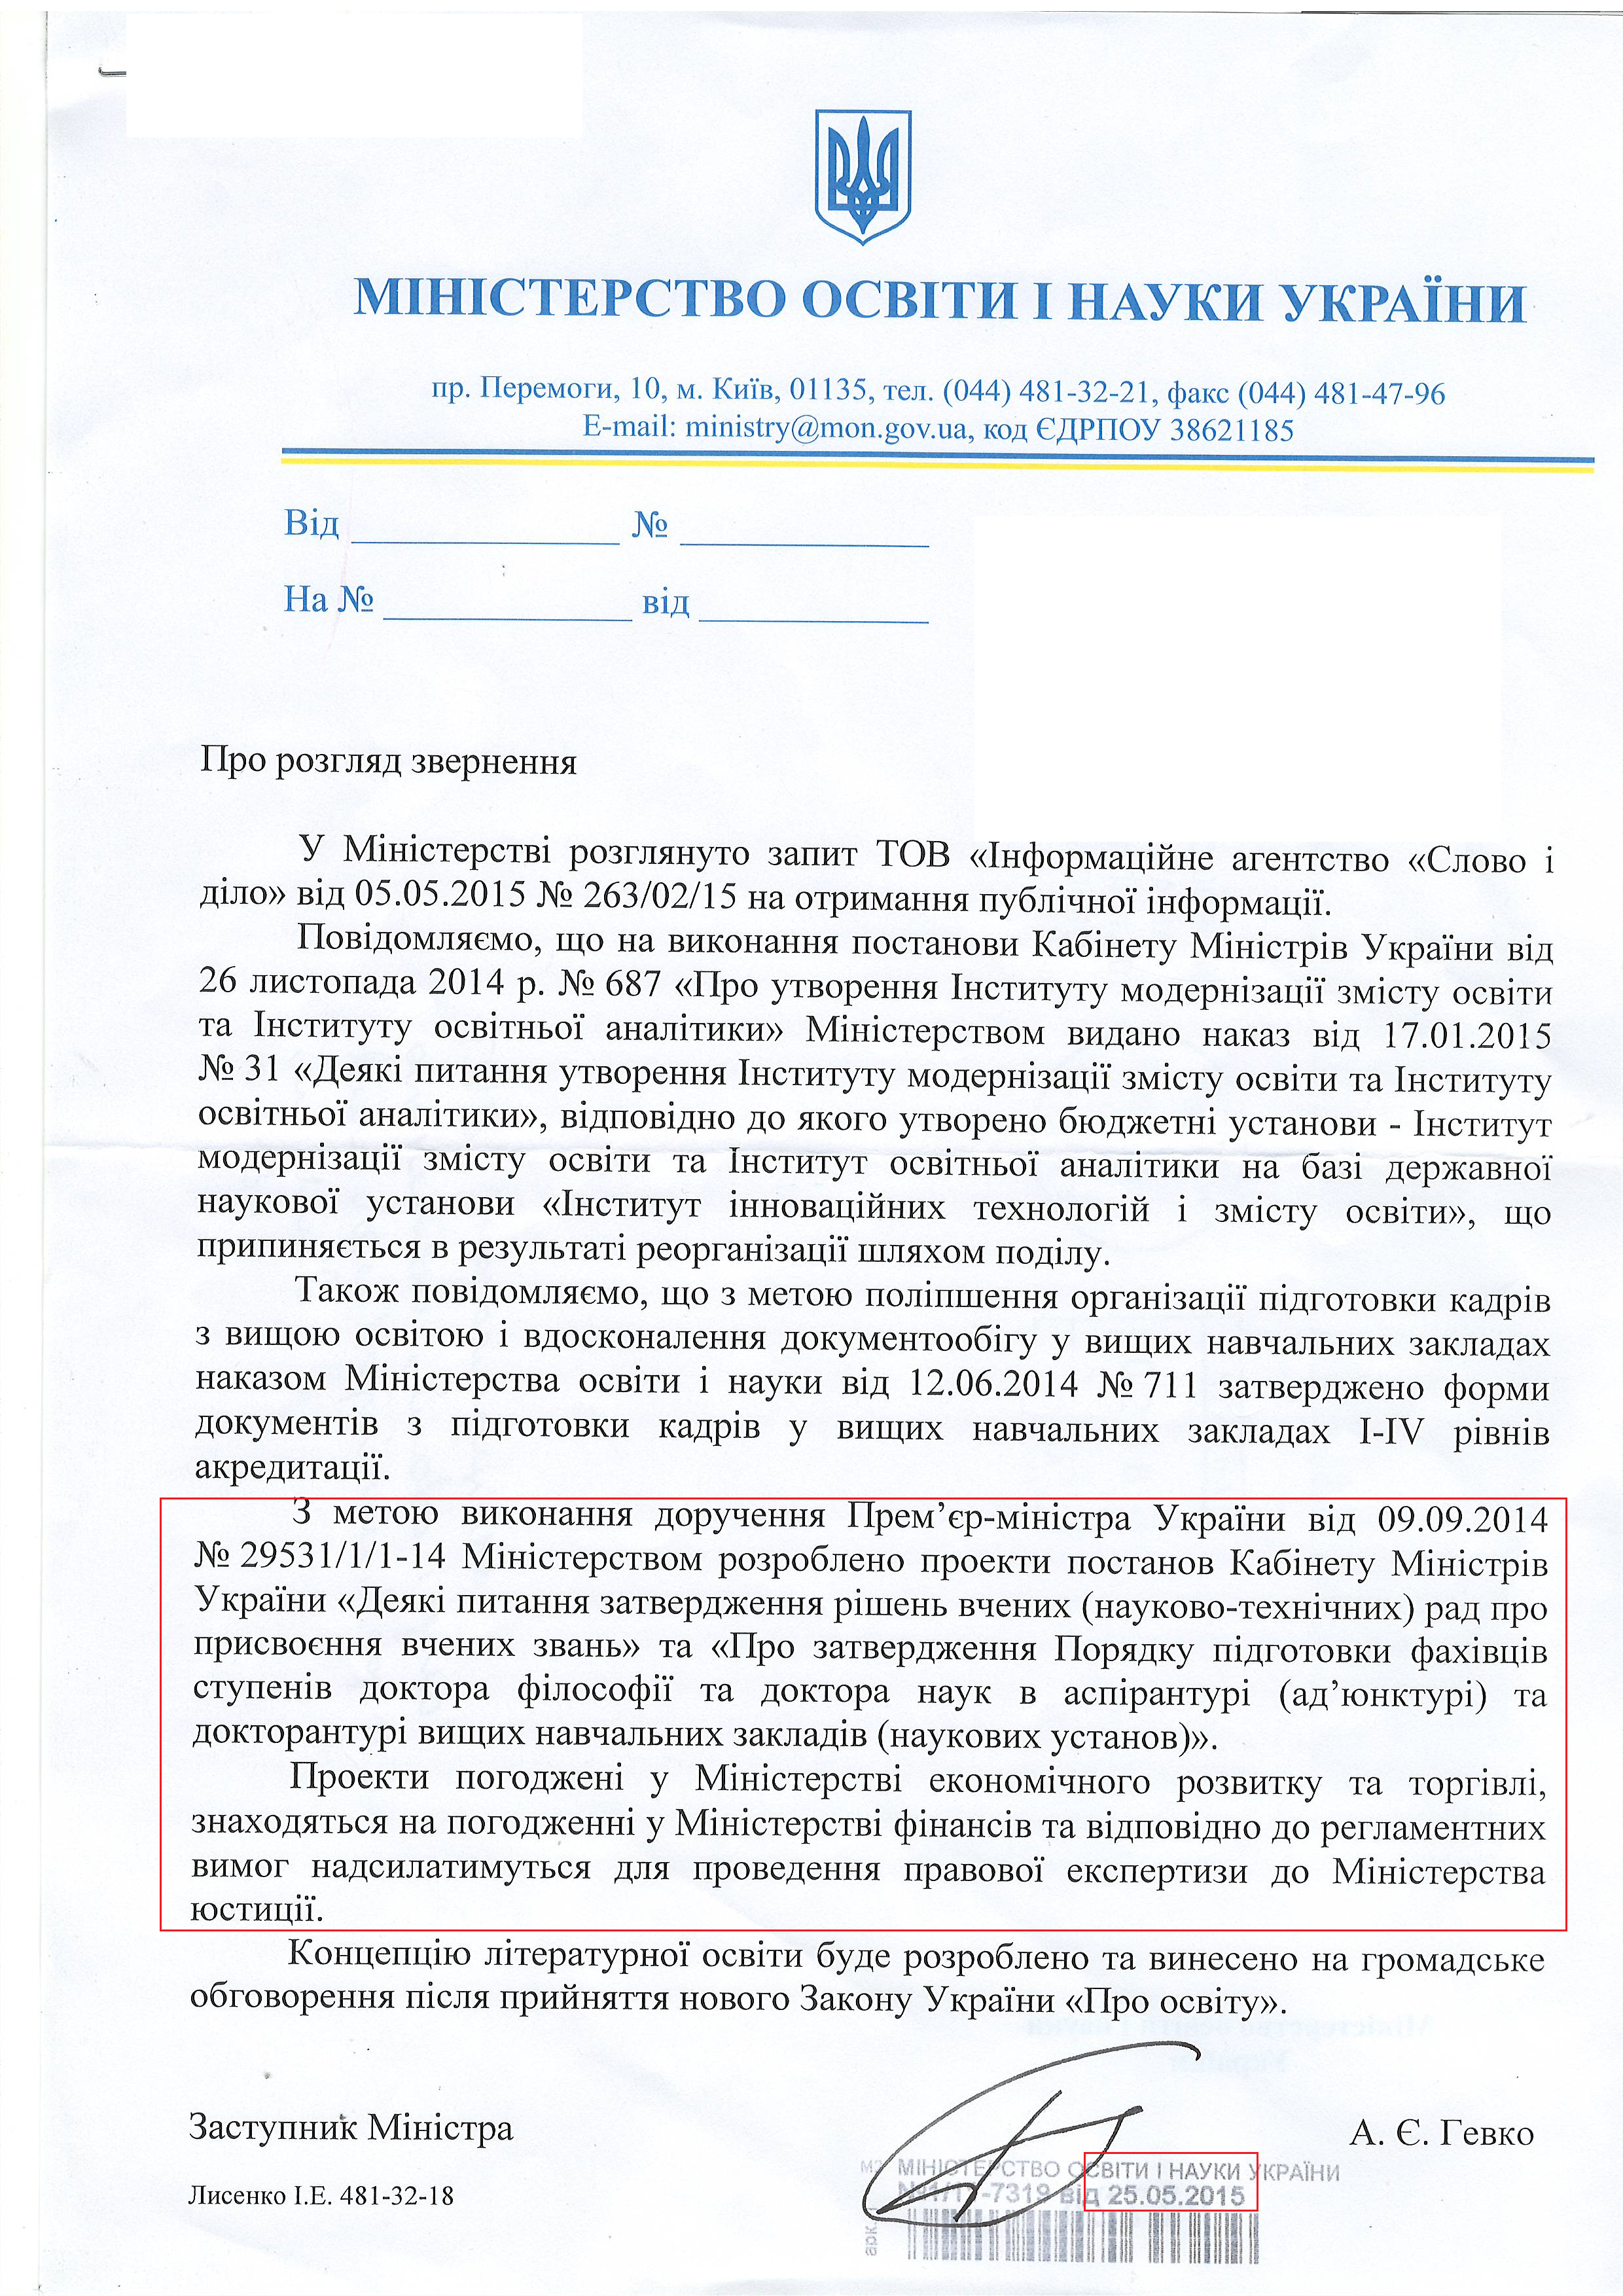 Лист міністерства освіти і науки України від 25 травня 2015 року